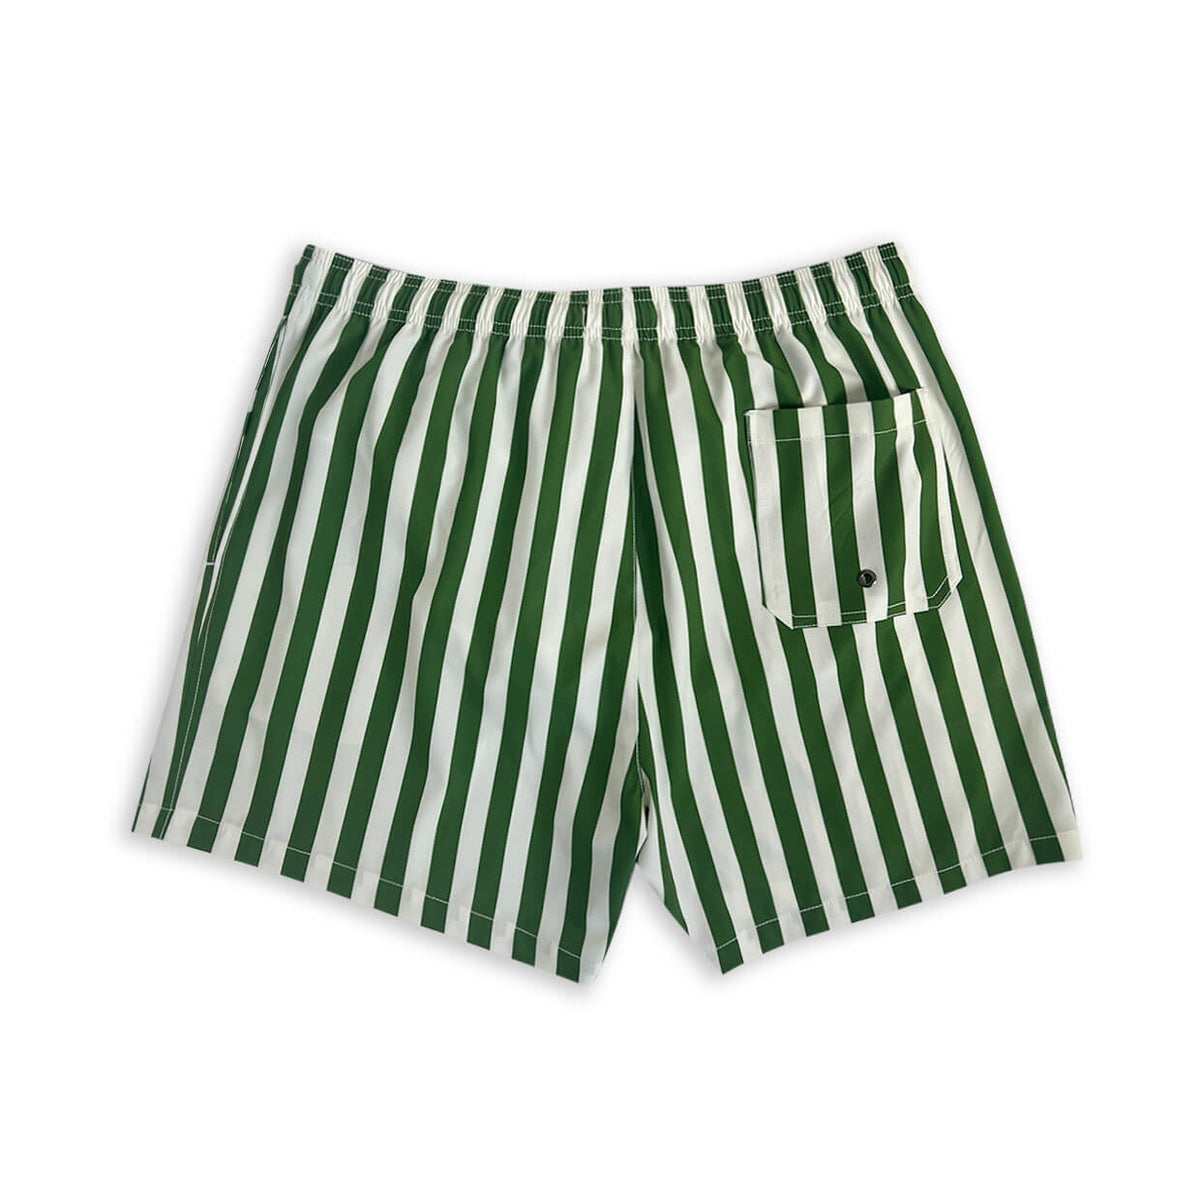 Men's Striped Shorts 5" Swim Trunks-Green